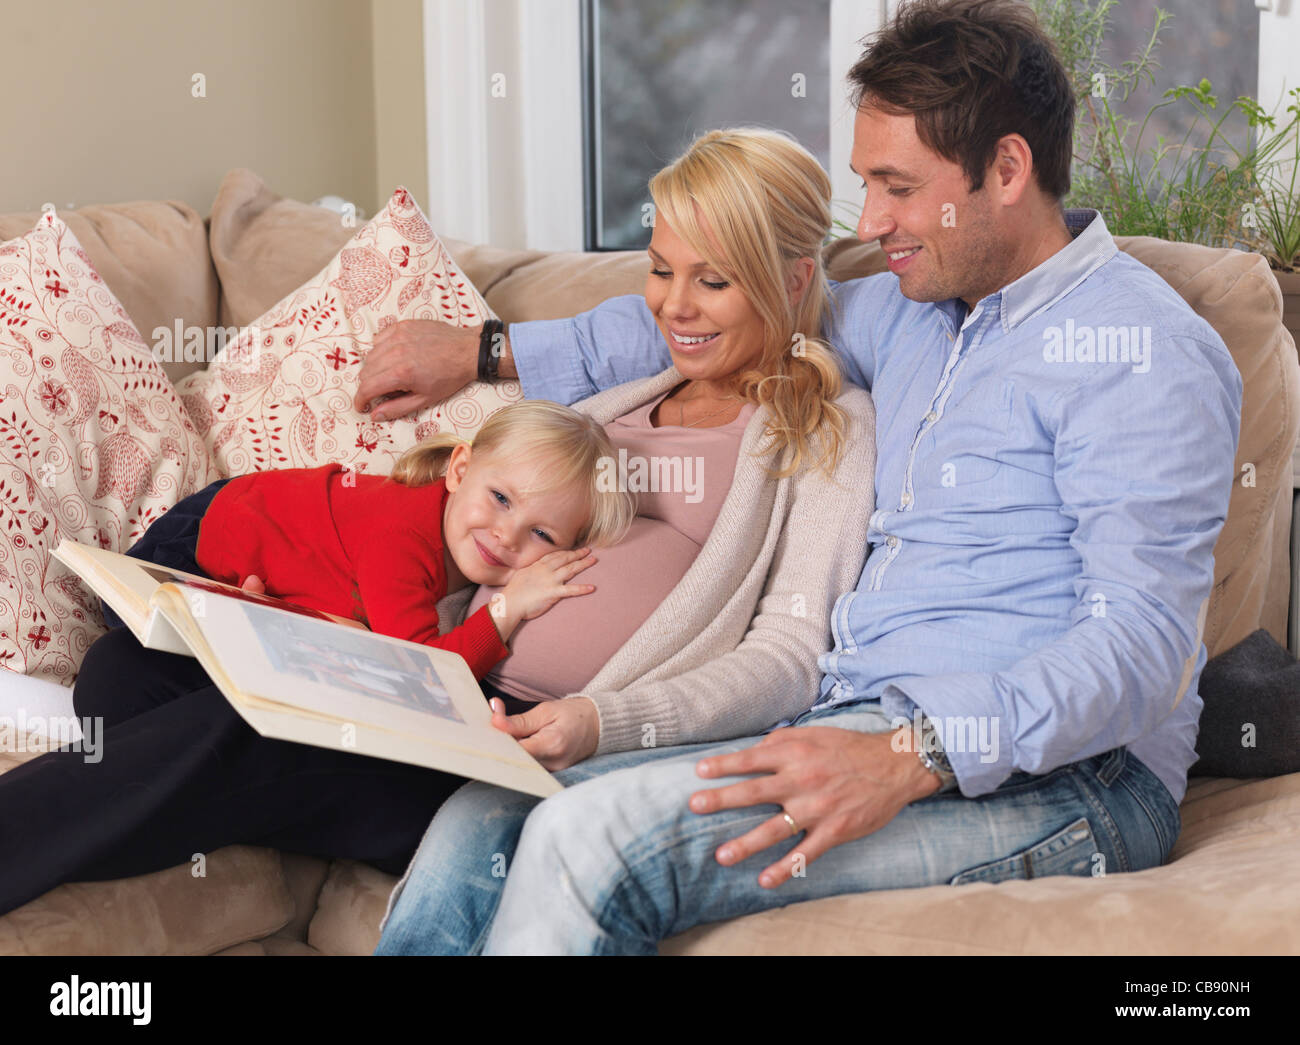 Famille heureuse en regardant l'album photo. Mère enceinte, papa et leur fille attend un autre bébé. Banque D'Images